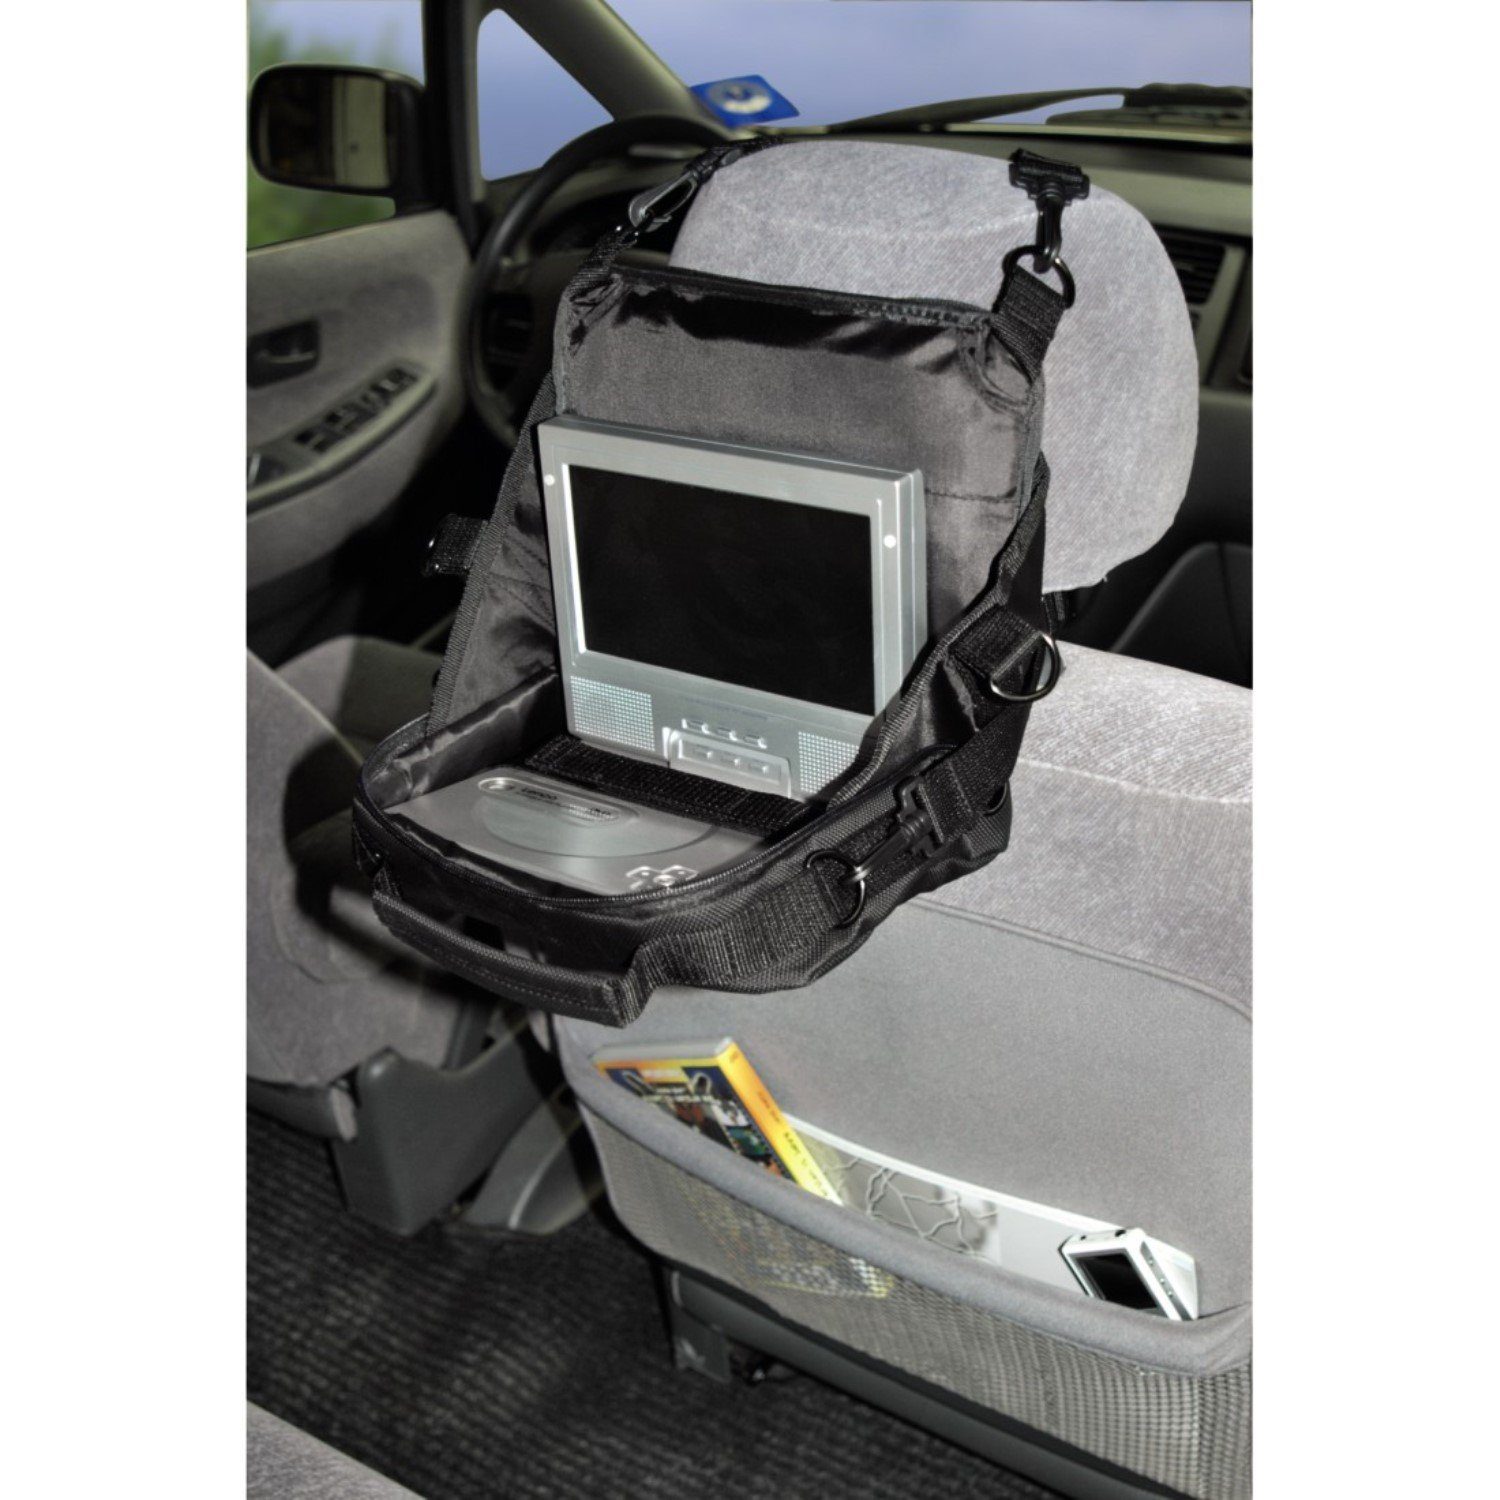 Hama DVD-Player-Tasche Tasche Hülle tragbarer Rückbank-Entertainment Kopfstütze, Kfz-Halterung Auto PKW DVD-Player, Mit für CD